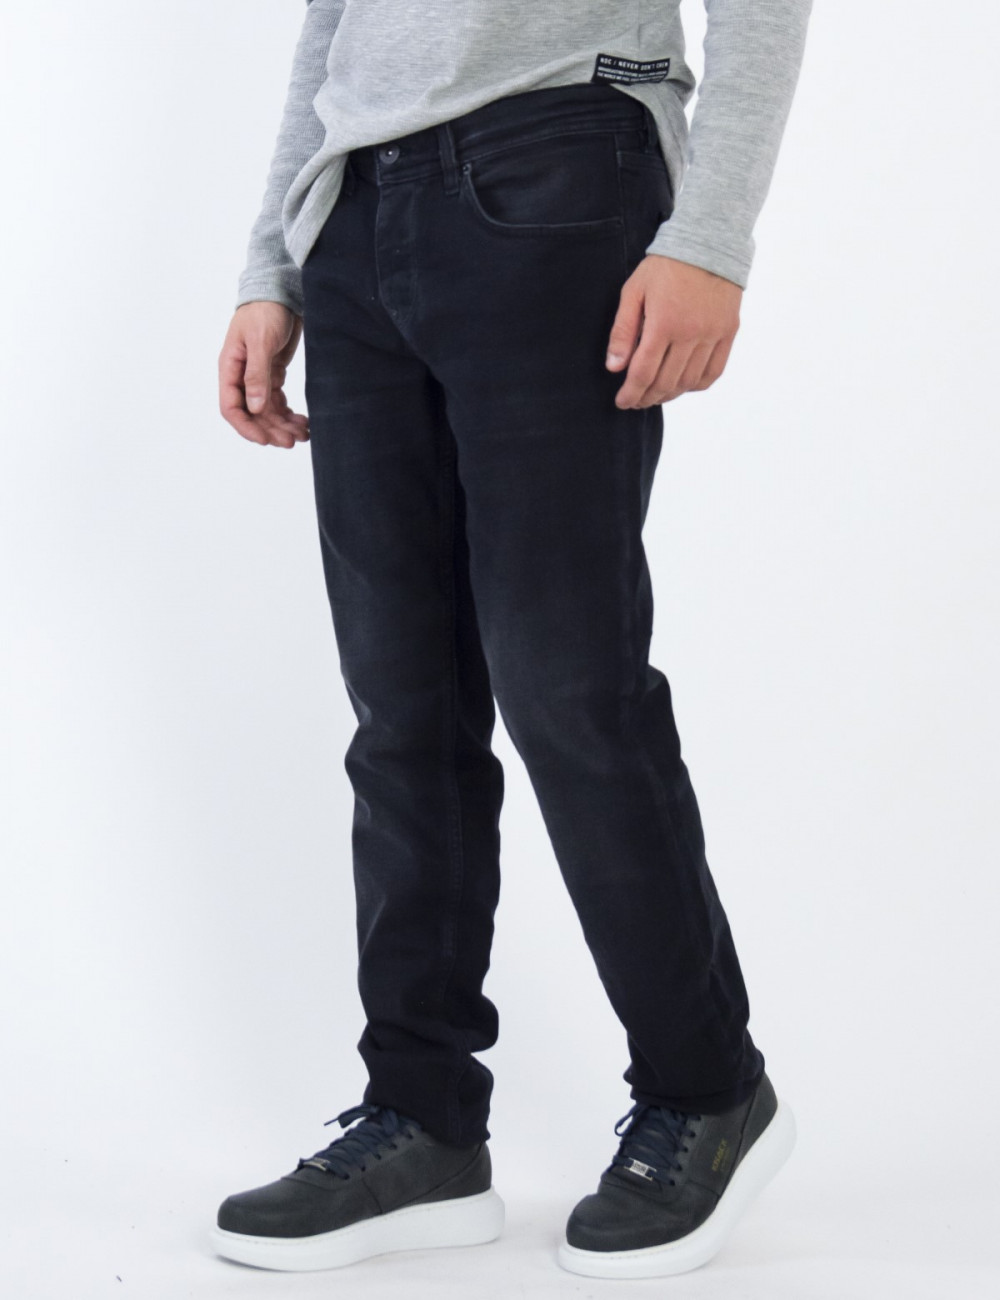 Ανδρικό ελαστικό Μαύρο Τζιν Παντελόνι Με Ελαφρύ Ξέβαμμα πεντάτσεπο με κουμπιά GB4981